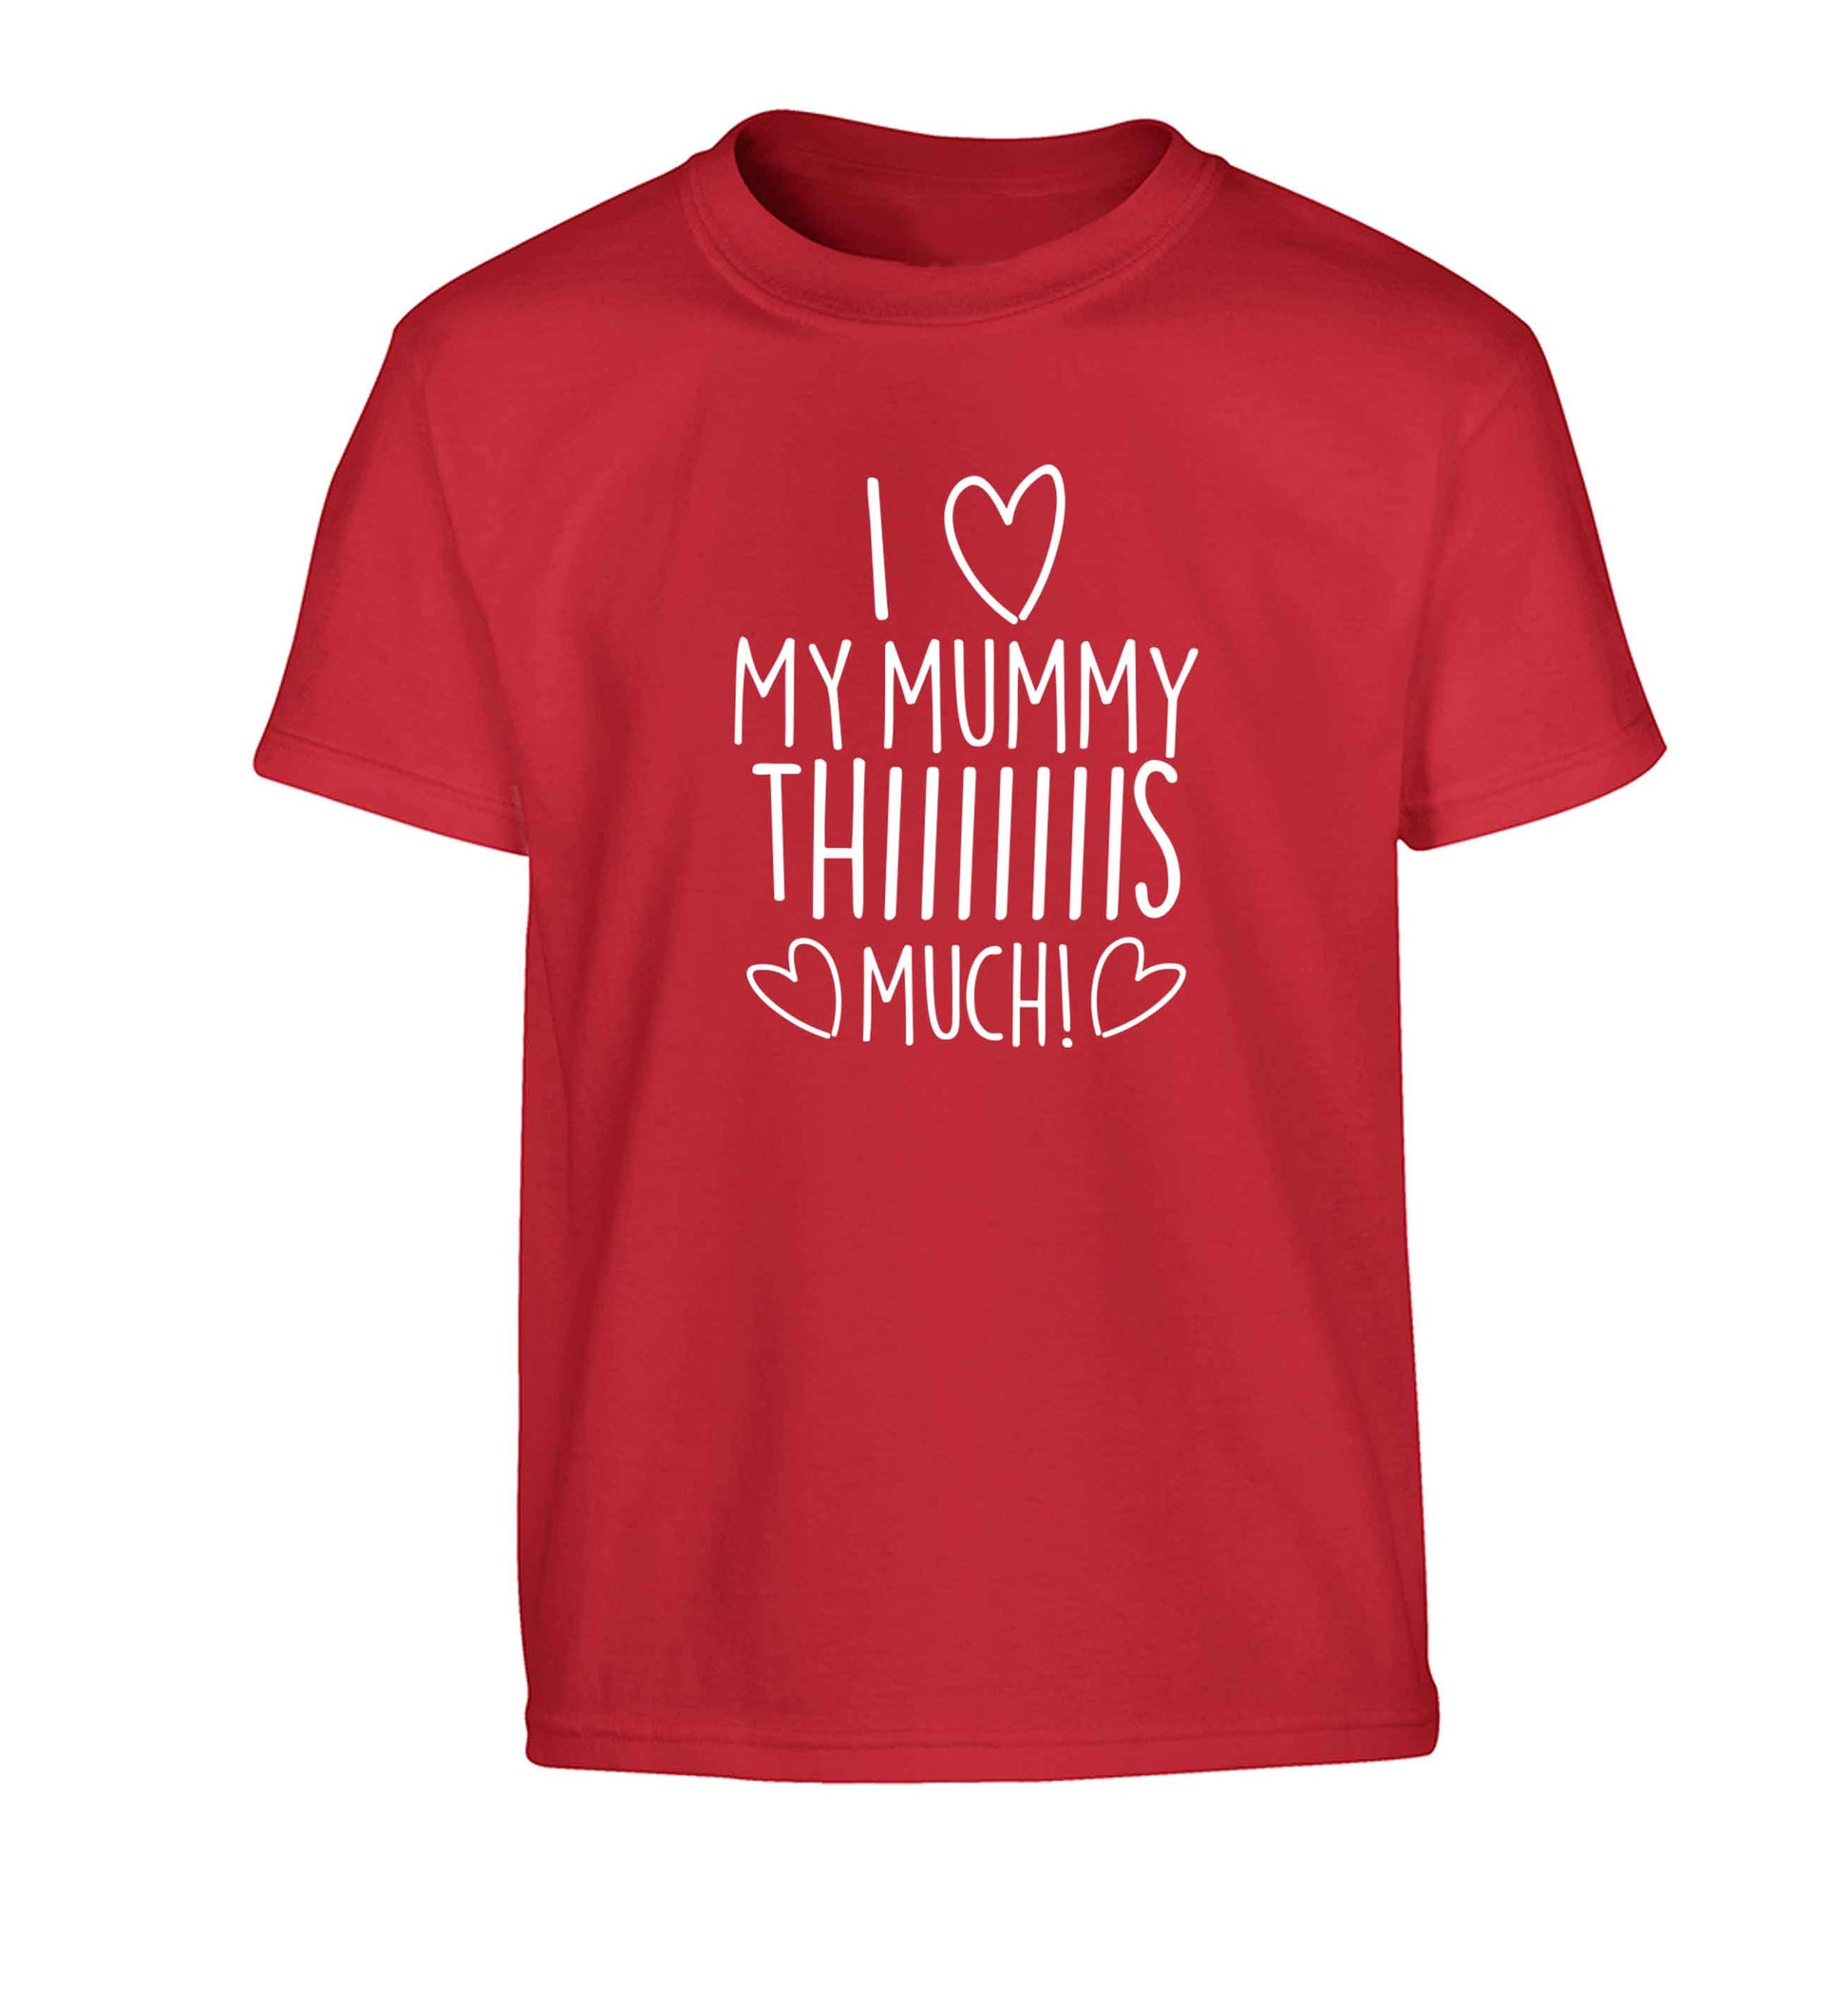 I love my mummy thiiiiis much! Children's red Tshirt 12-13 Years